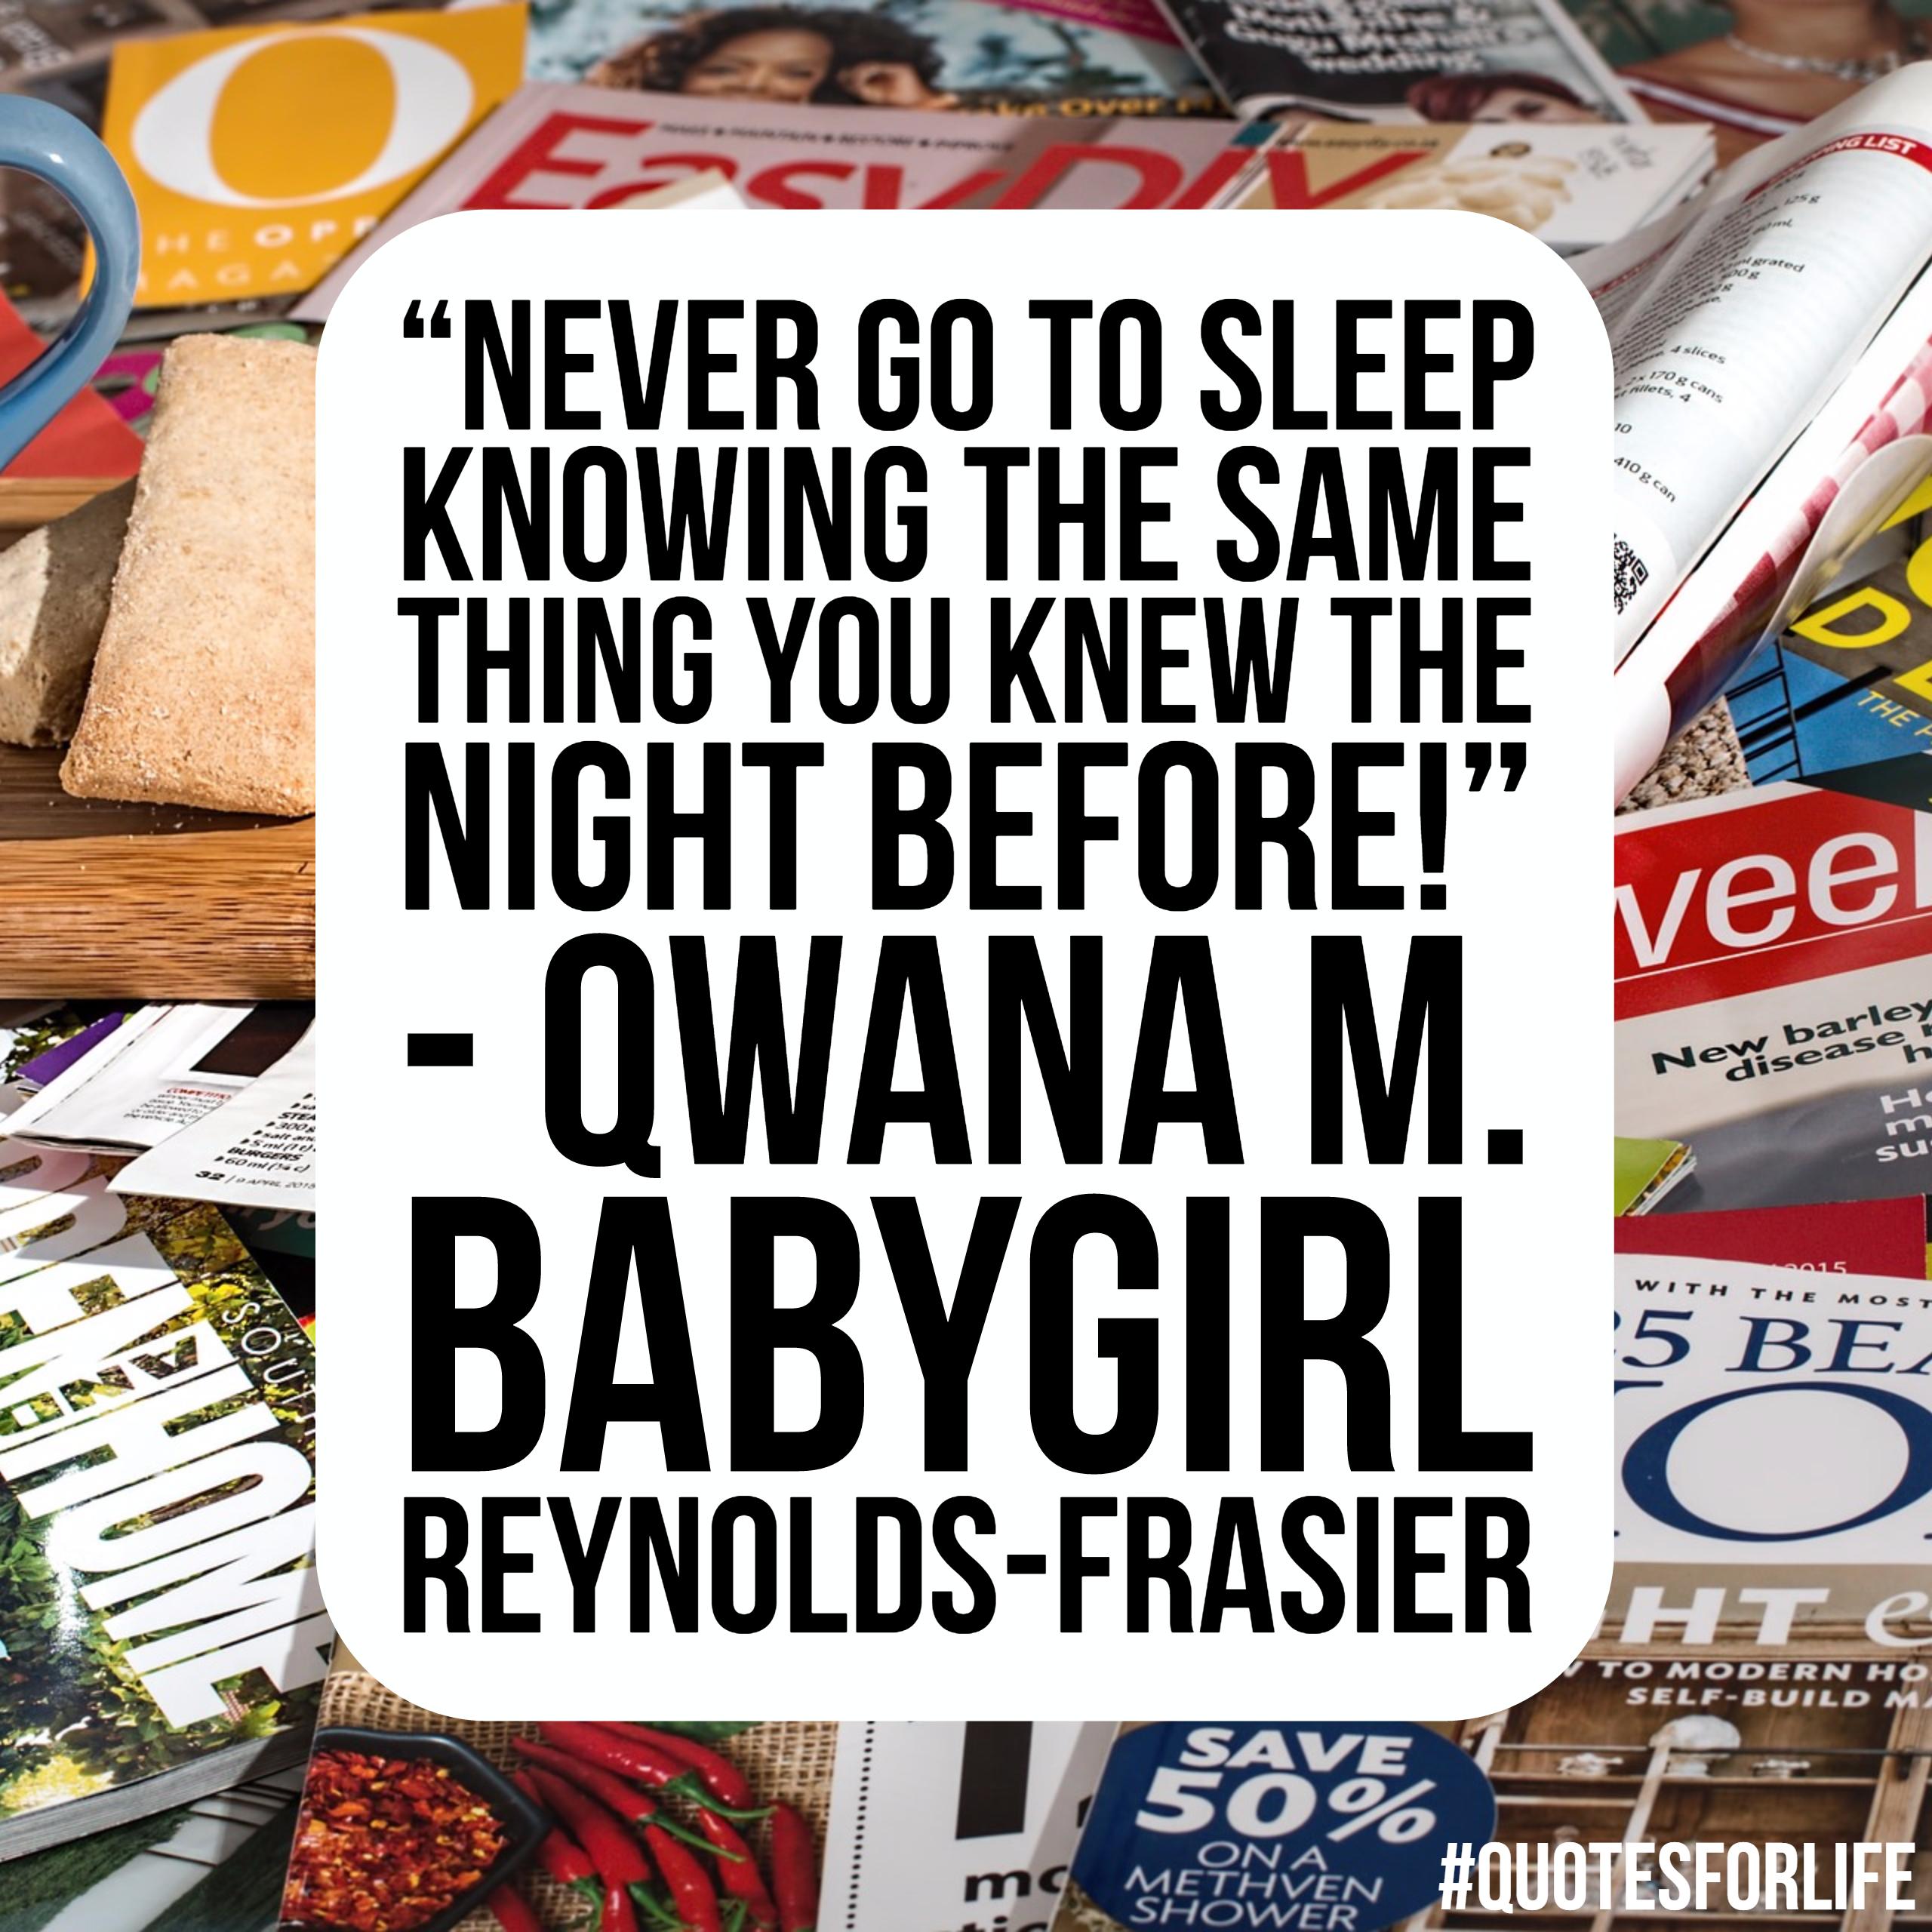 Qwana M. 'Babygirl' Reynolds-Frasier